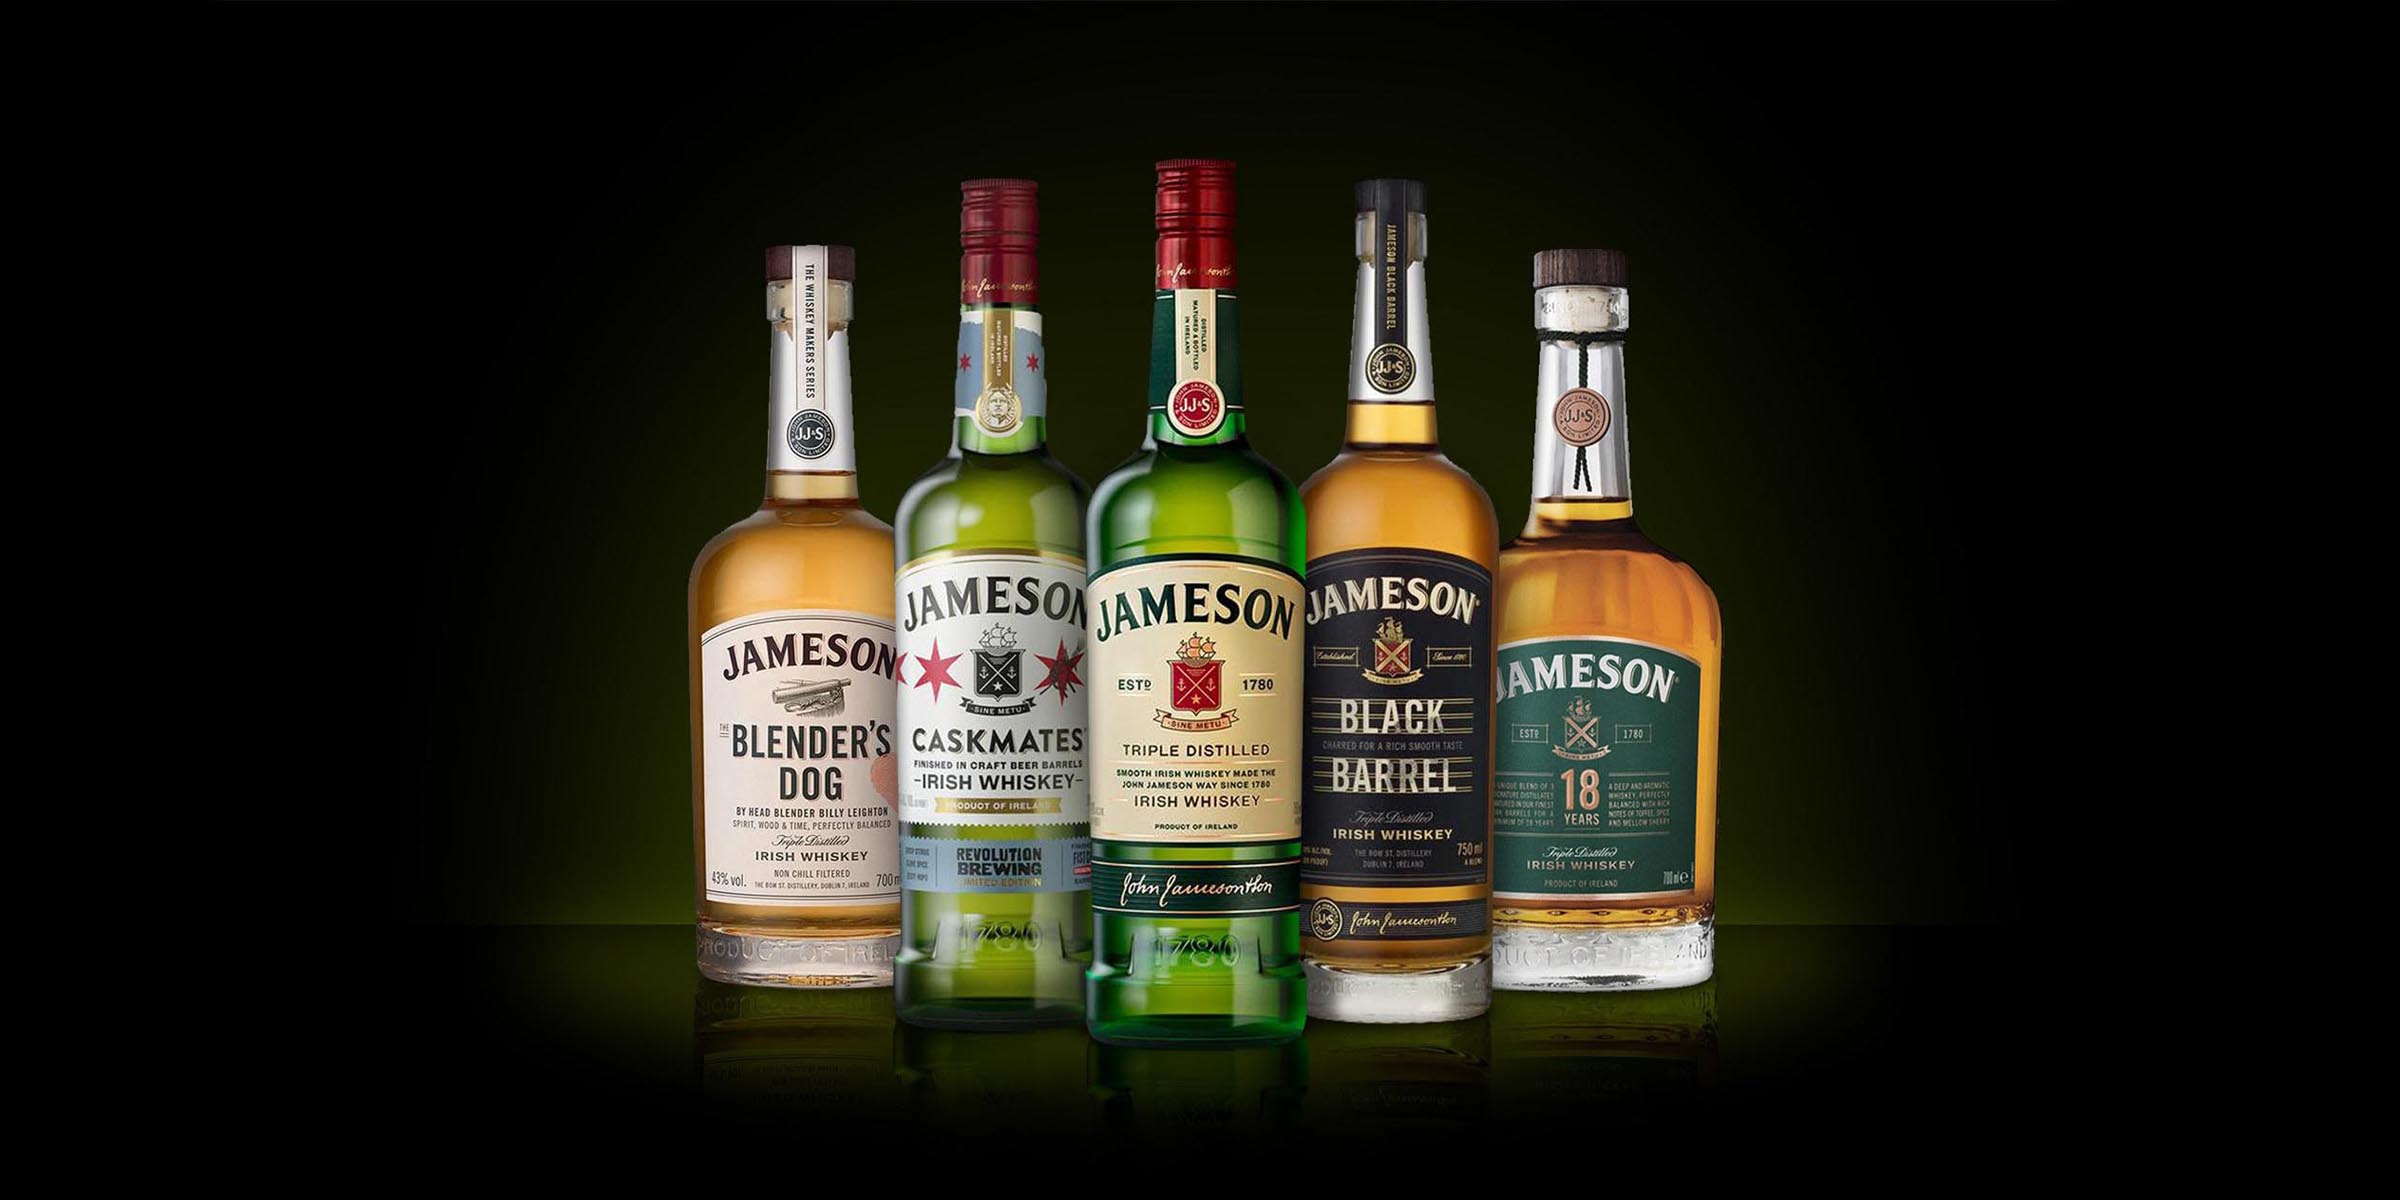 Jameson Irish Whiskey 4.5 litre 